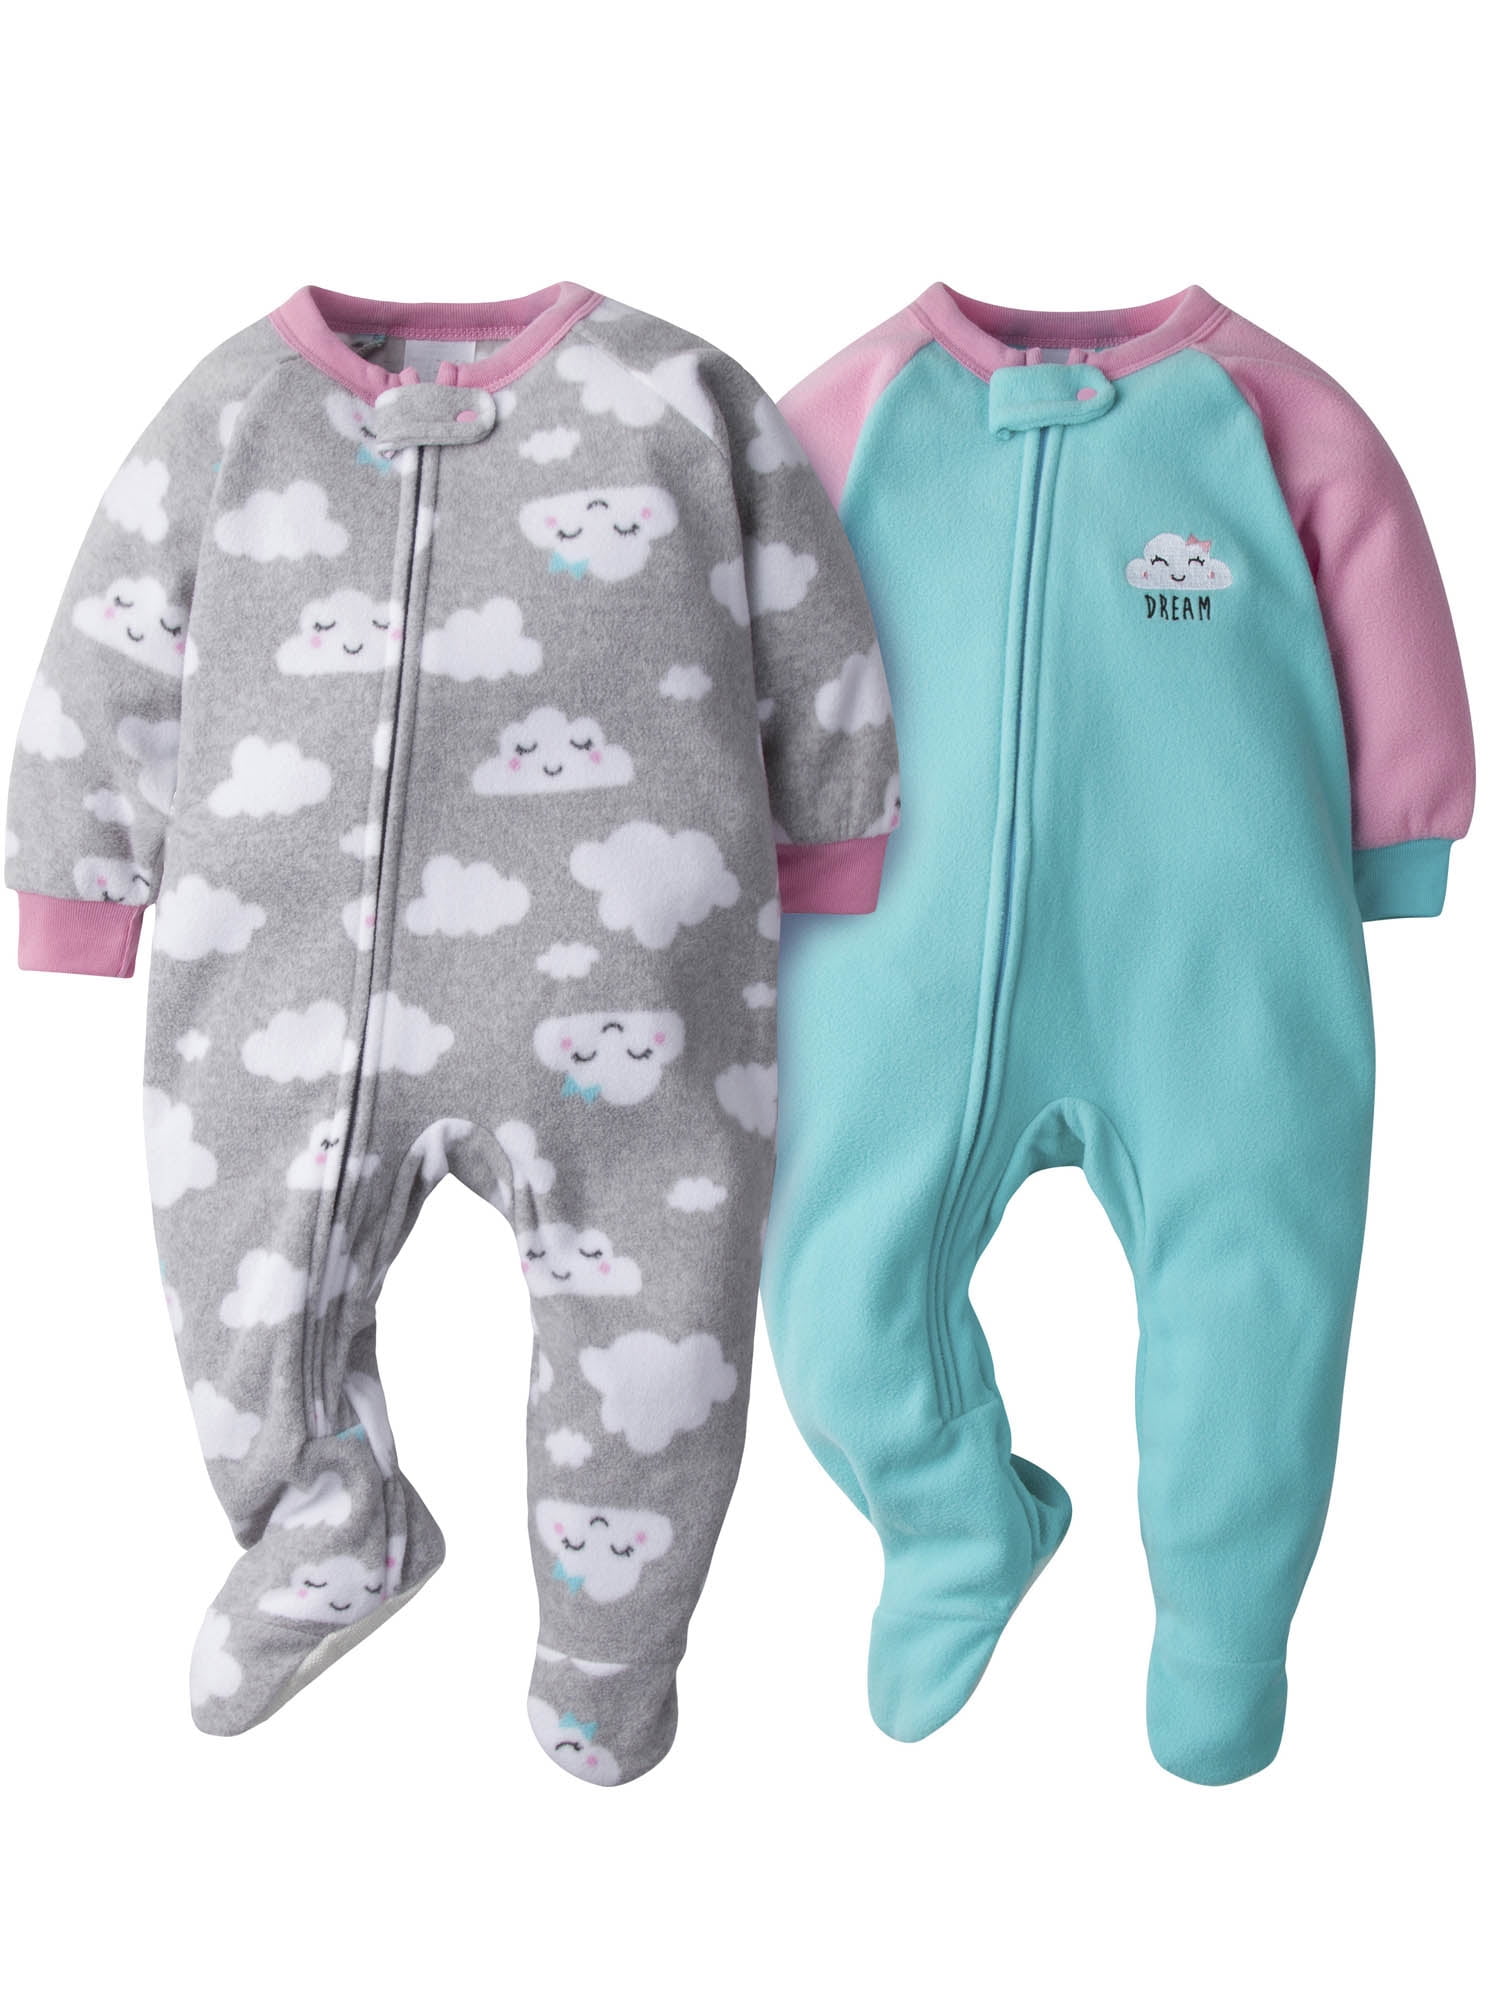 Gerber - Gerber Baby Girls Microfleece Blanket Sleepers Pajamas, 2-Pack -  Walmart.com - Walmart.com